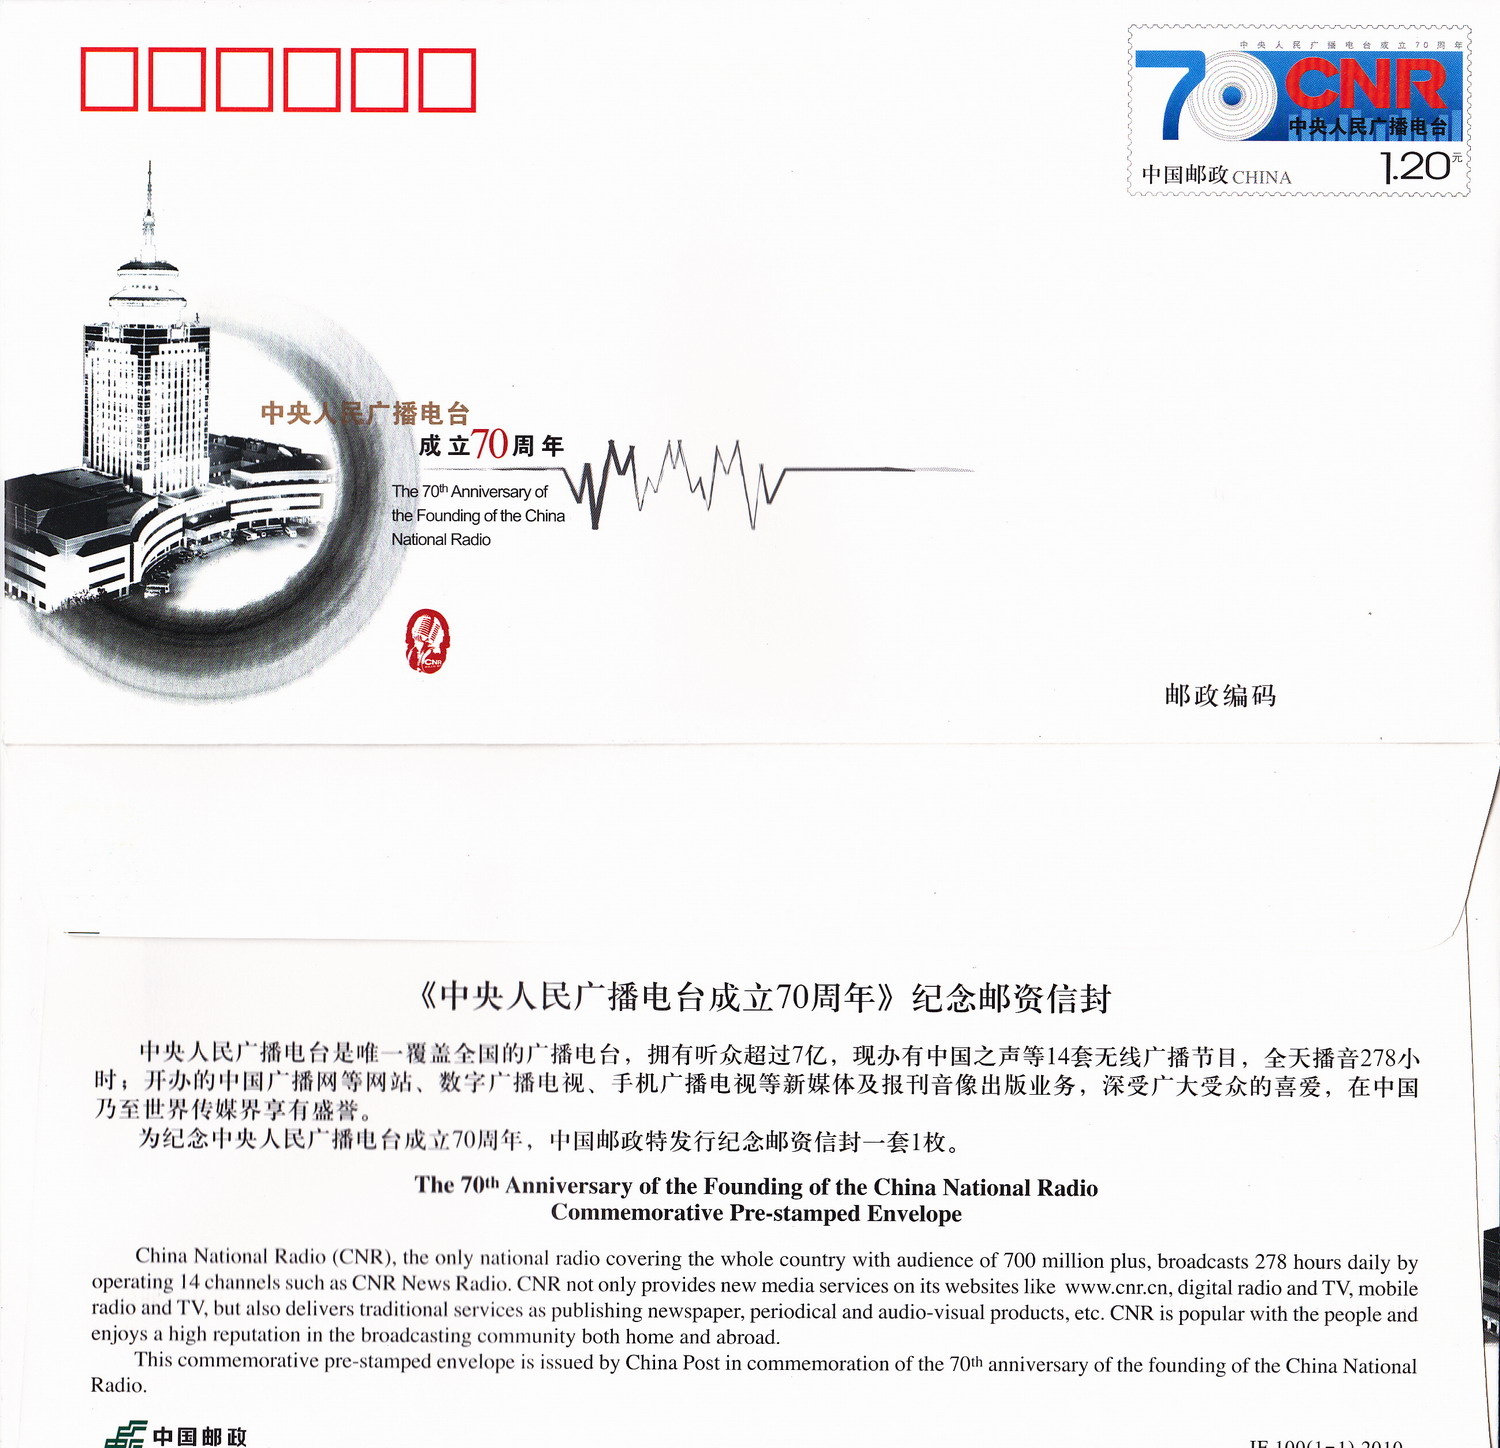 JF100 The 70th Anniversary of China National Radio, 2010